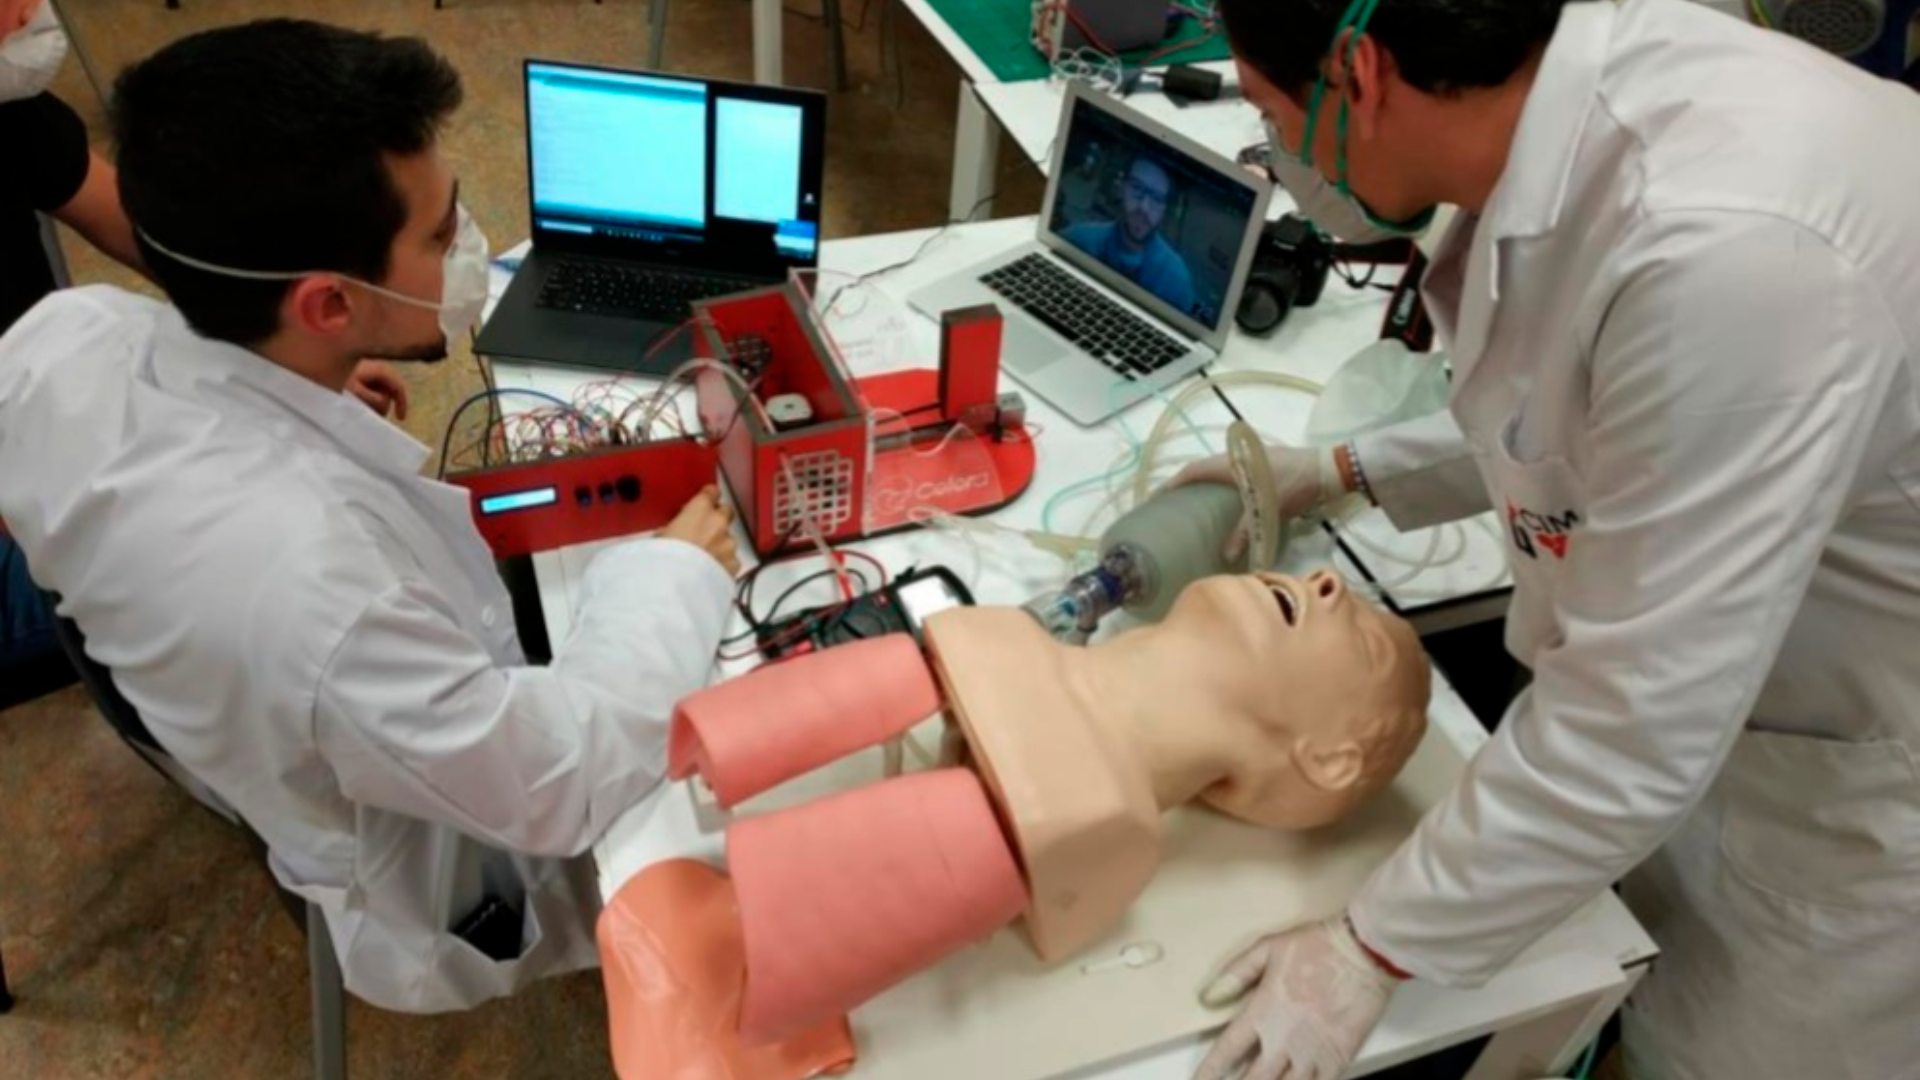 Médicos, ingenieros e informáticos españoles crean un nuevo respirador resistente y asequible